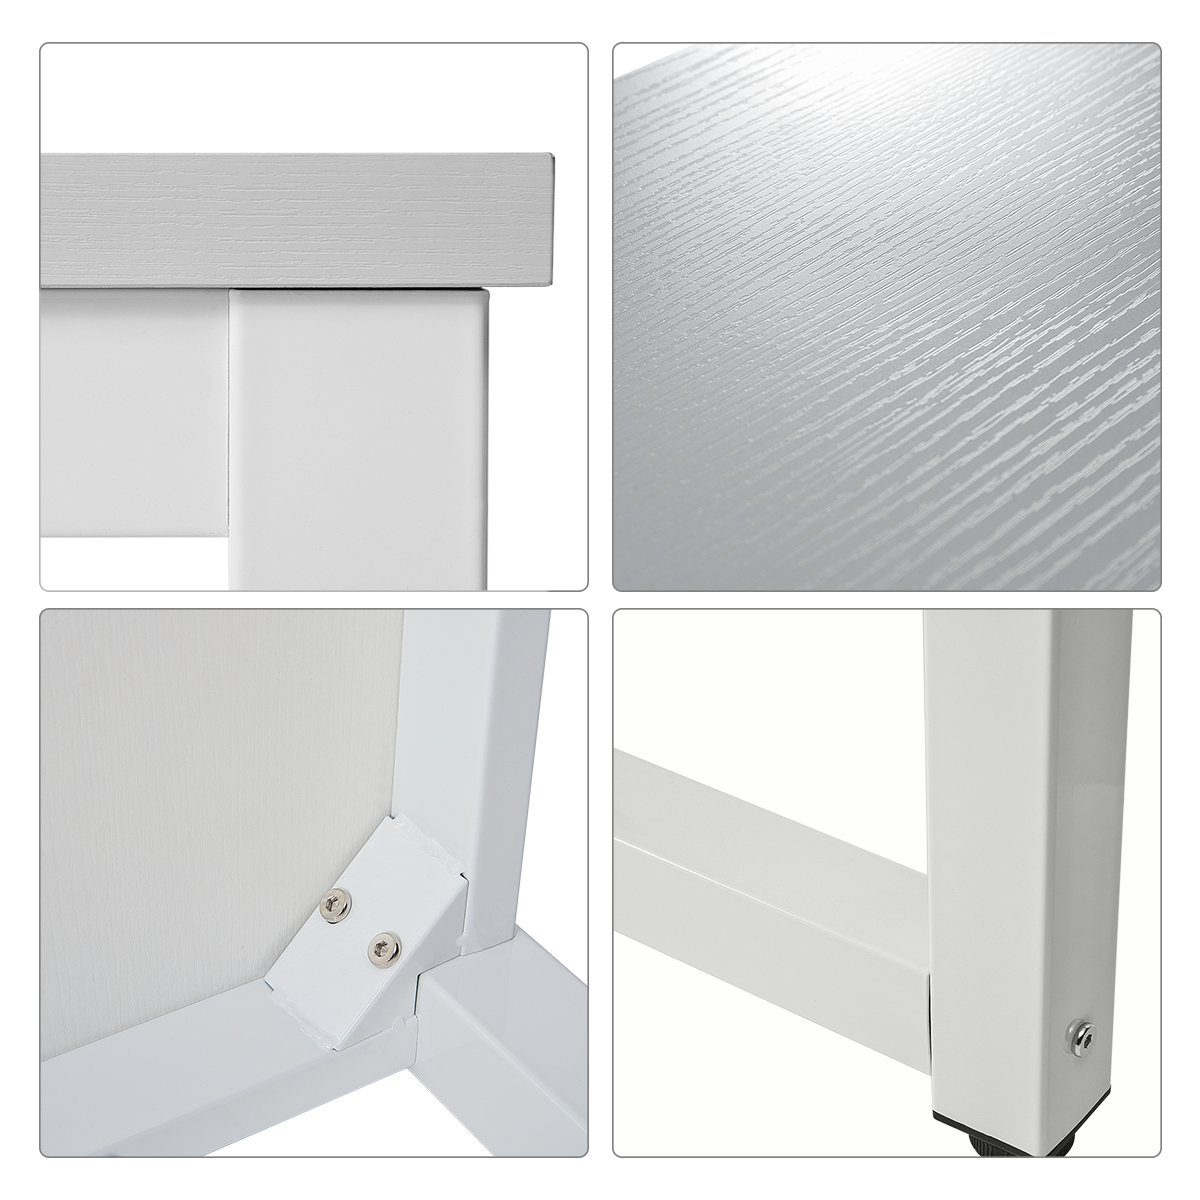 | Farben PC weiß Merax einfacher weiß Aufbau in Arbeitstisch, Bürotisch Tisch | Schreibtisch verschiedenen Weiß Stahlgestell Computertisch